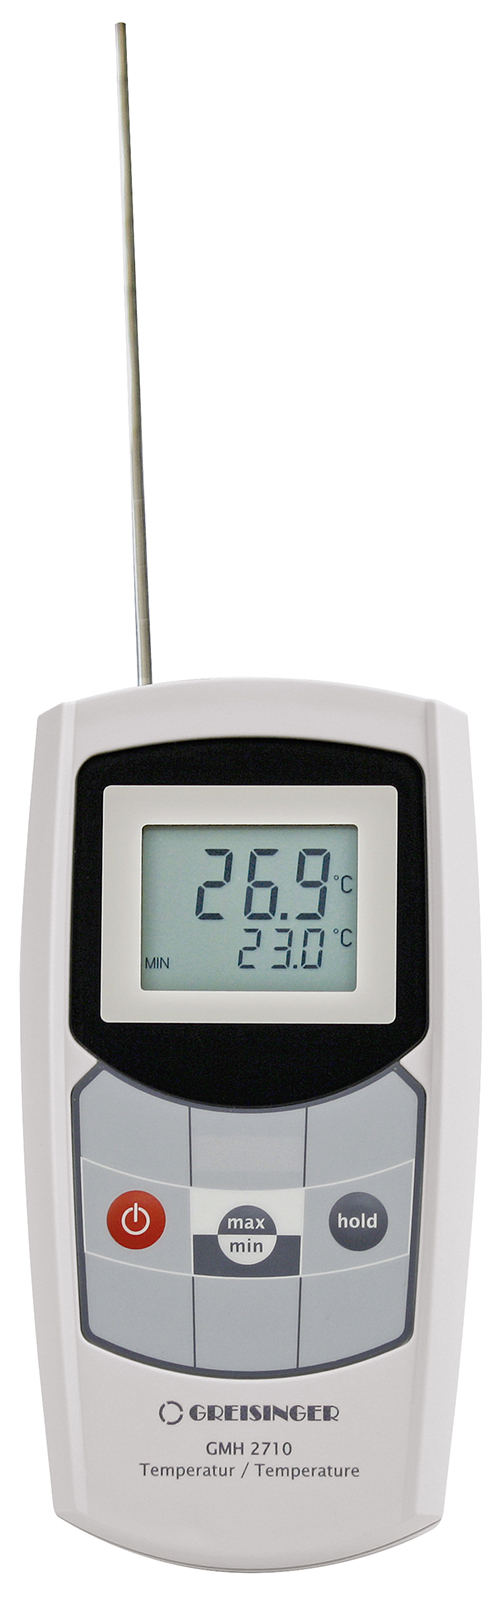 Digitalthermometer Bratenthermometer mit Tauchfühler Greisinger G 1710 ORIGINAL 